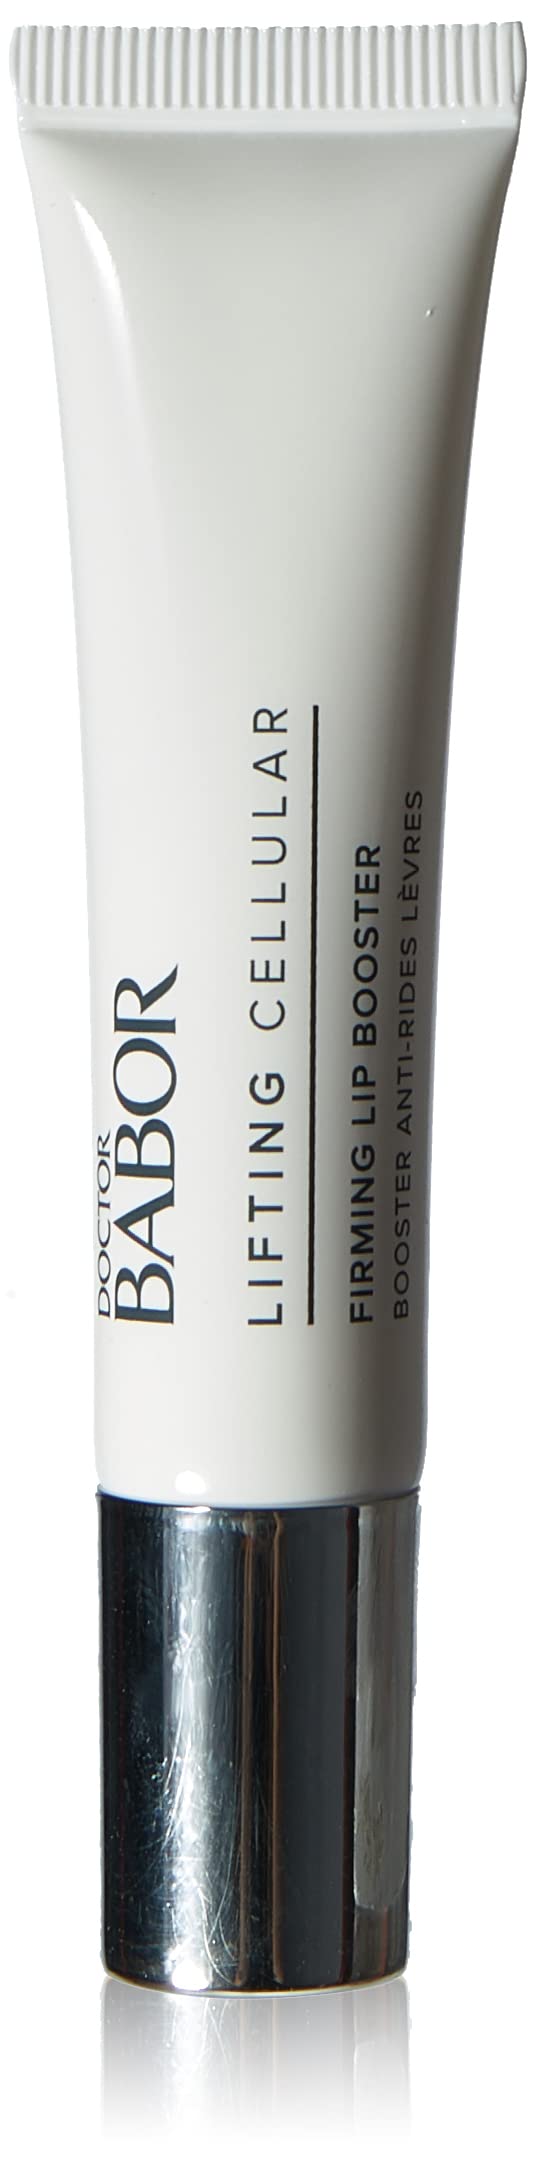 DOCTOR BABOR Firming Lip Booster, glättender Lippenpflege-Balsam, mit Plumping-Effekt, für pralle Lippen, mehr Volumen, gegen Lippenfalten, 15ml